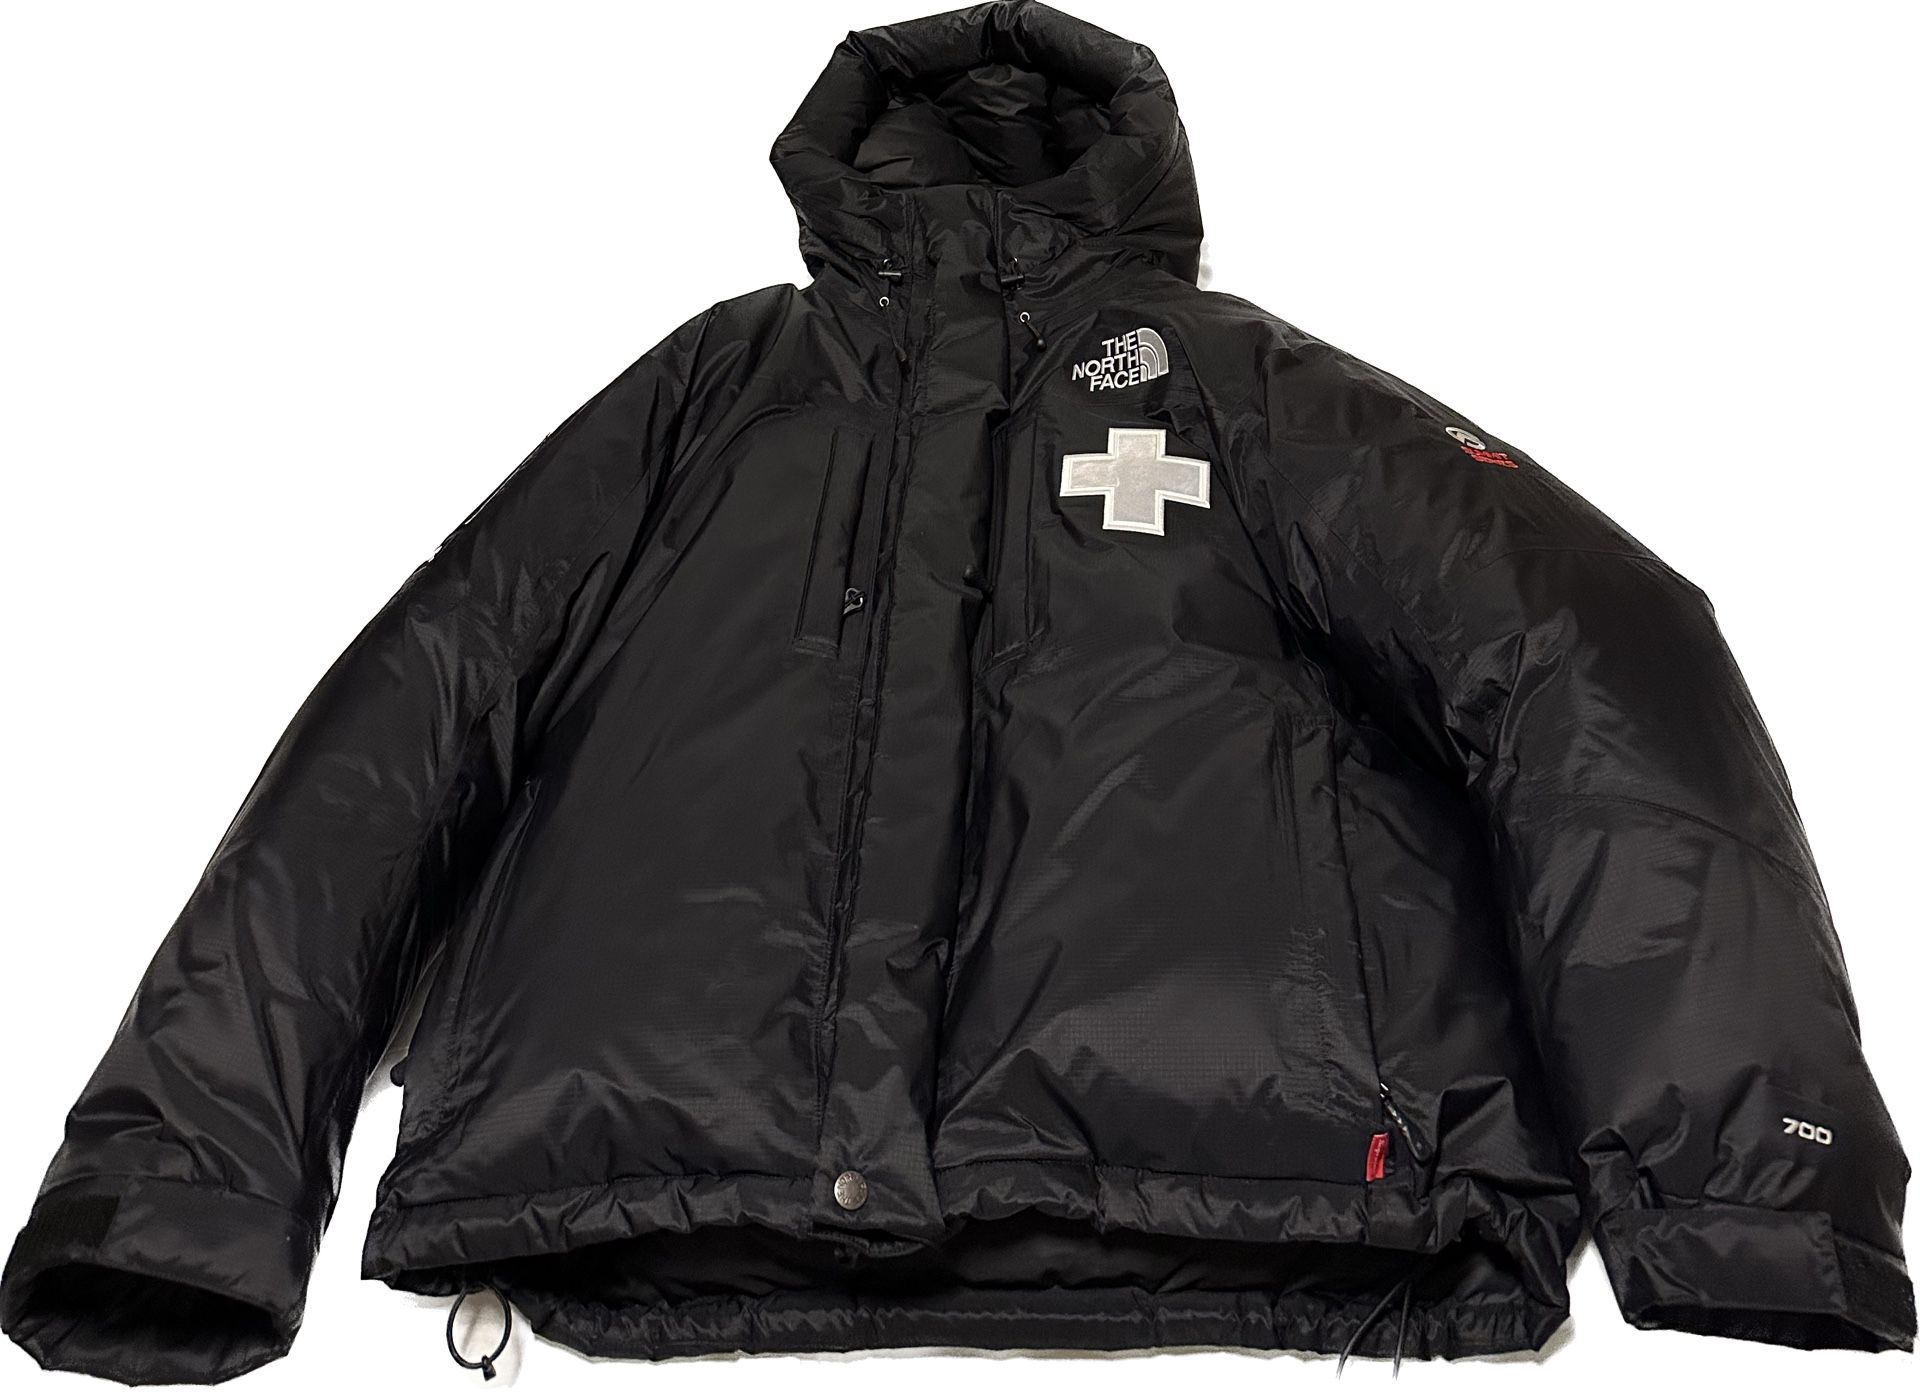 Supreme The North Face Summit Series Rescue Baltoro Jacket Size Small Color Black